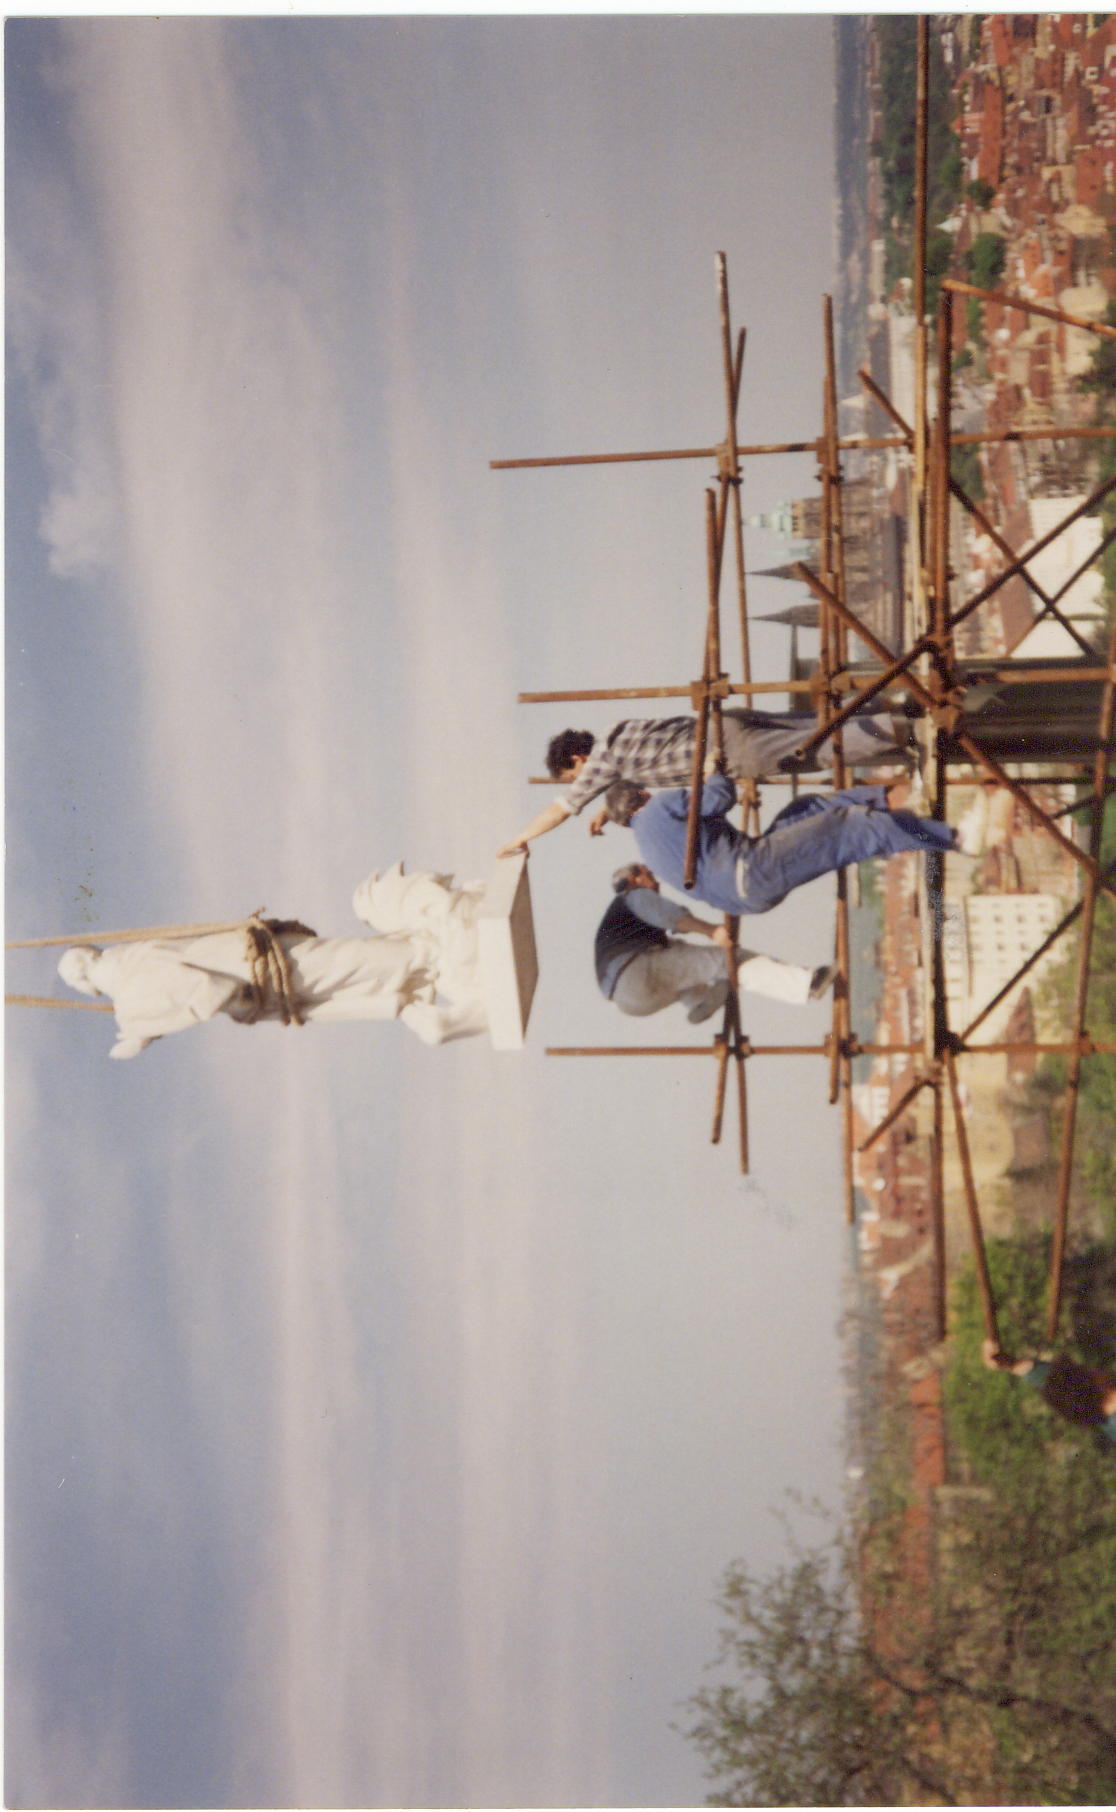 PM z exilu osazování sochy lešení 1994.jpg